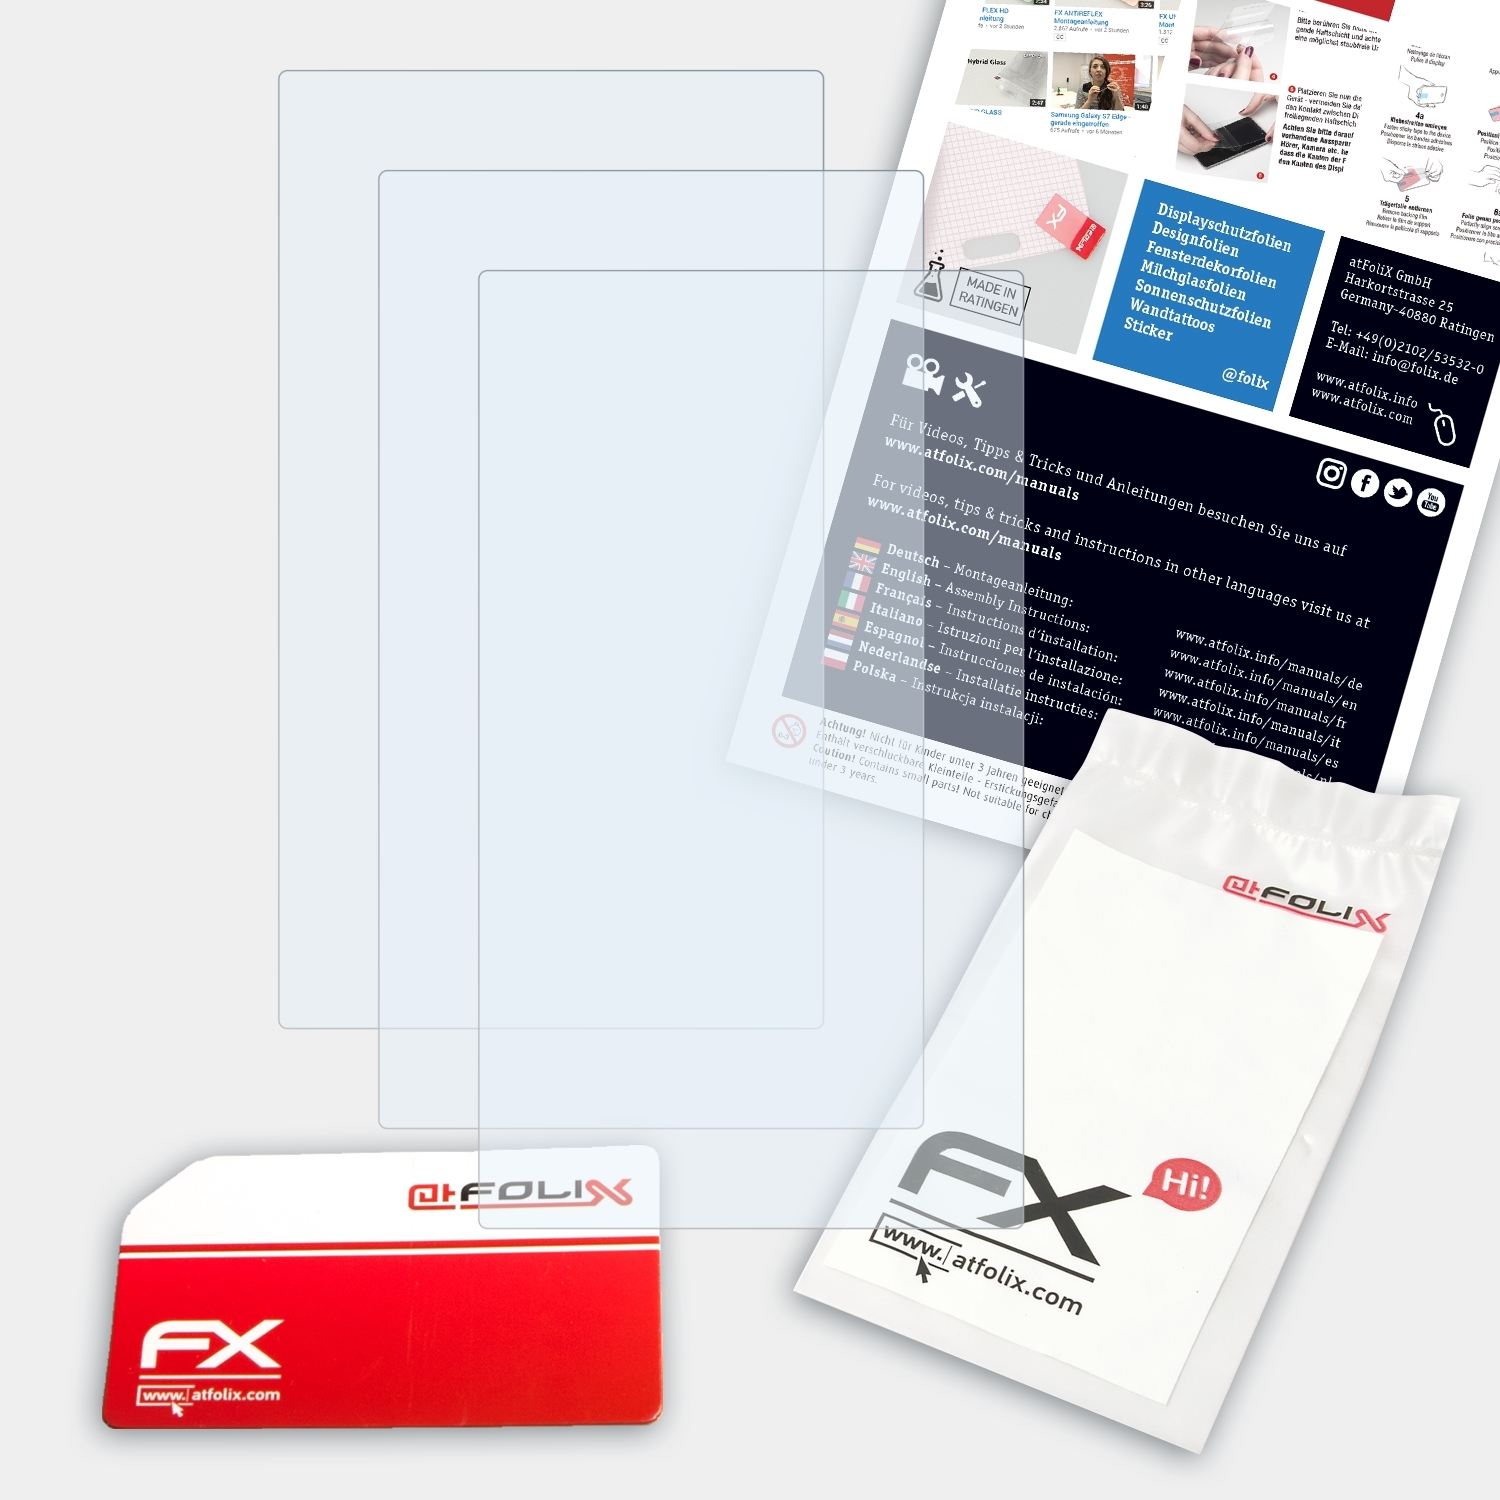 ATFOLIX 3x FX-Clear Displayschutz(für Garmin nüvi 2595)